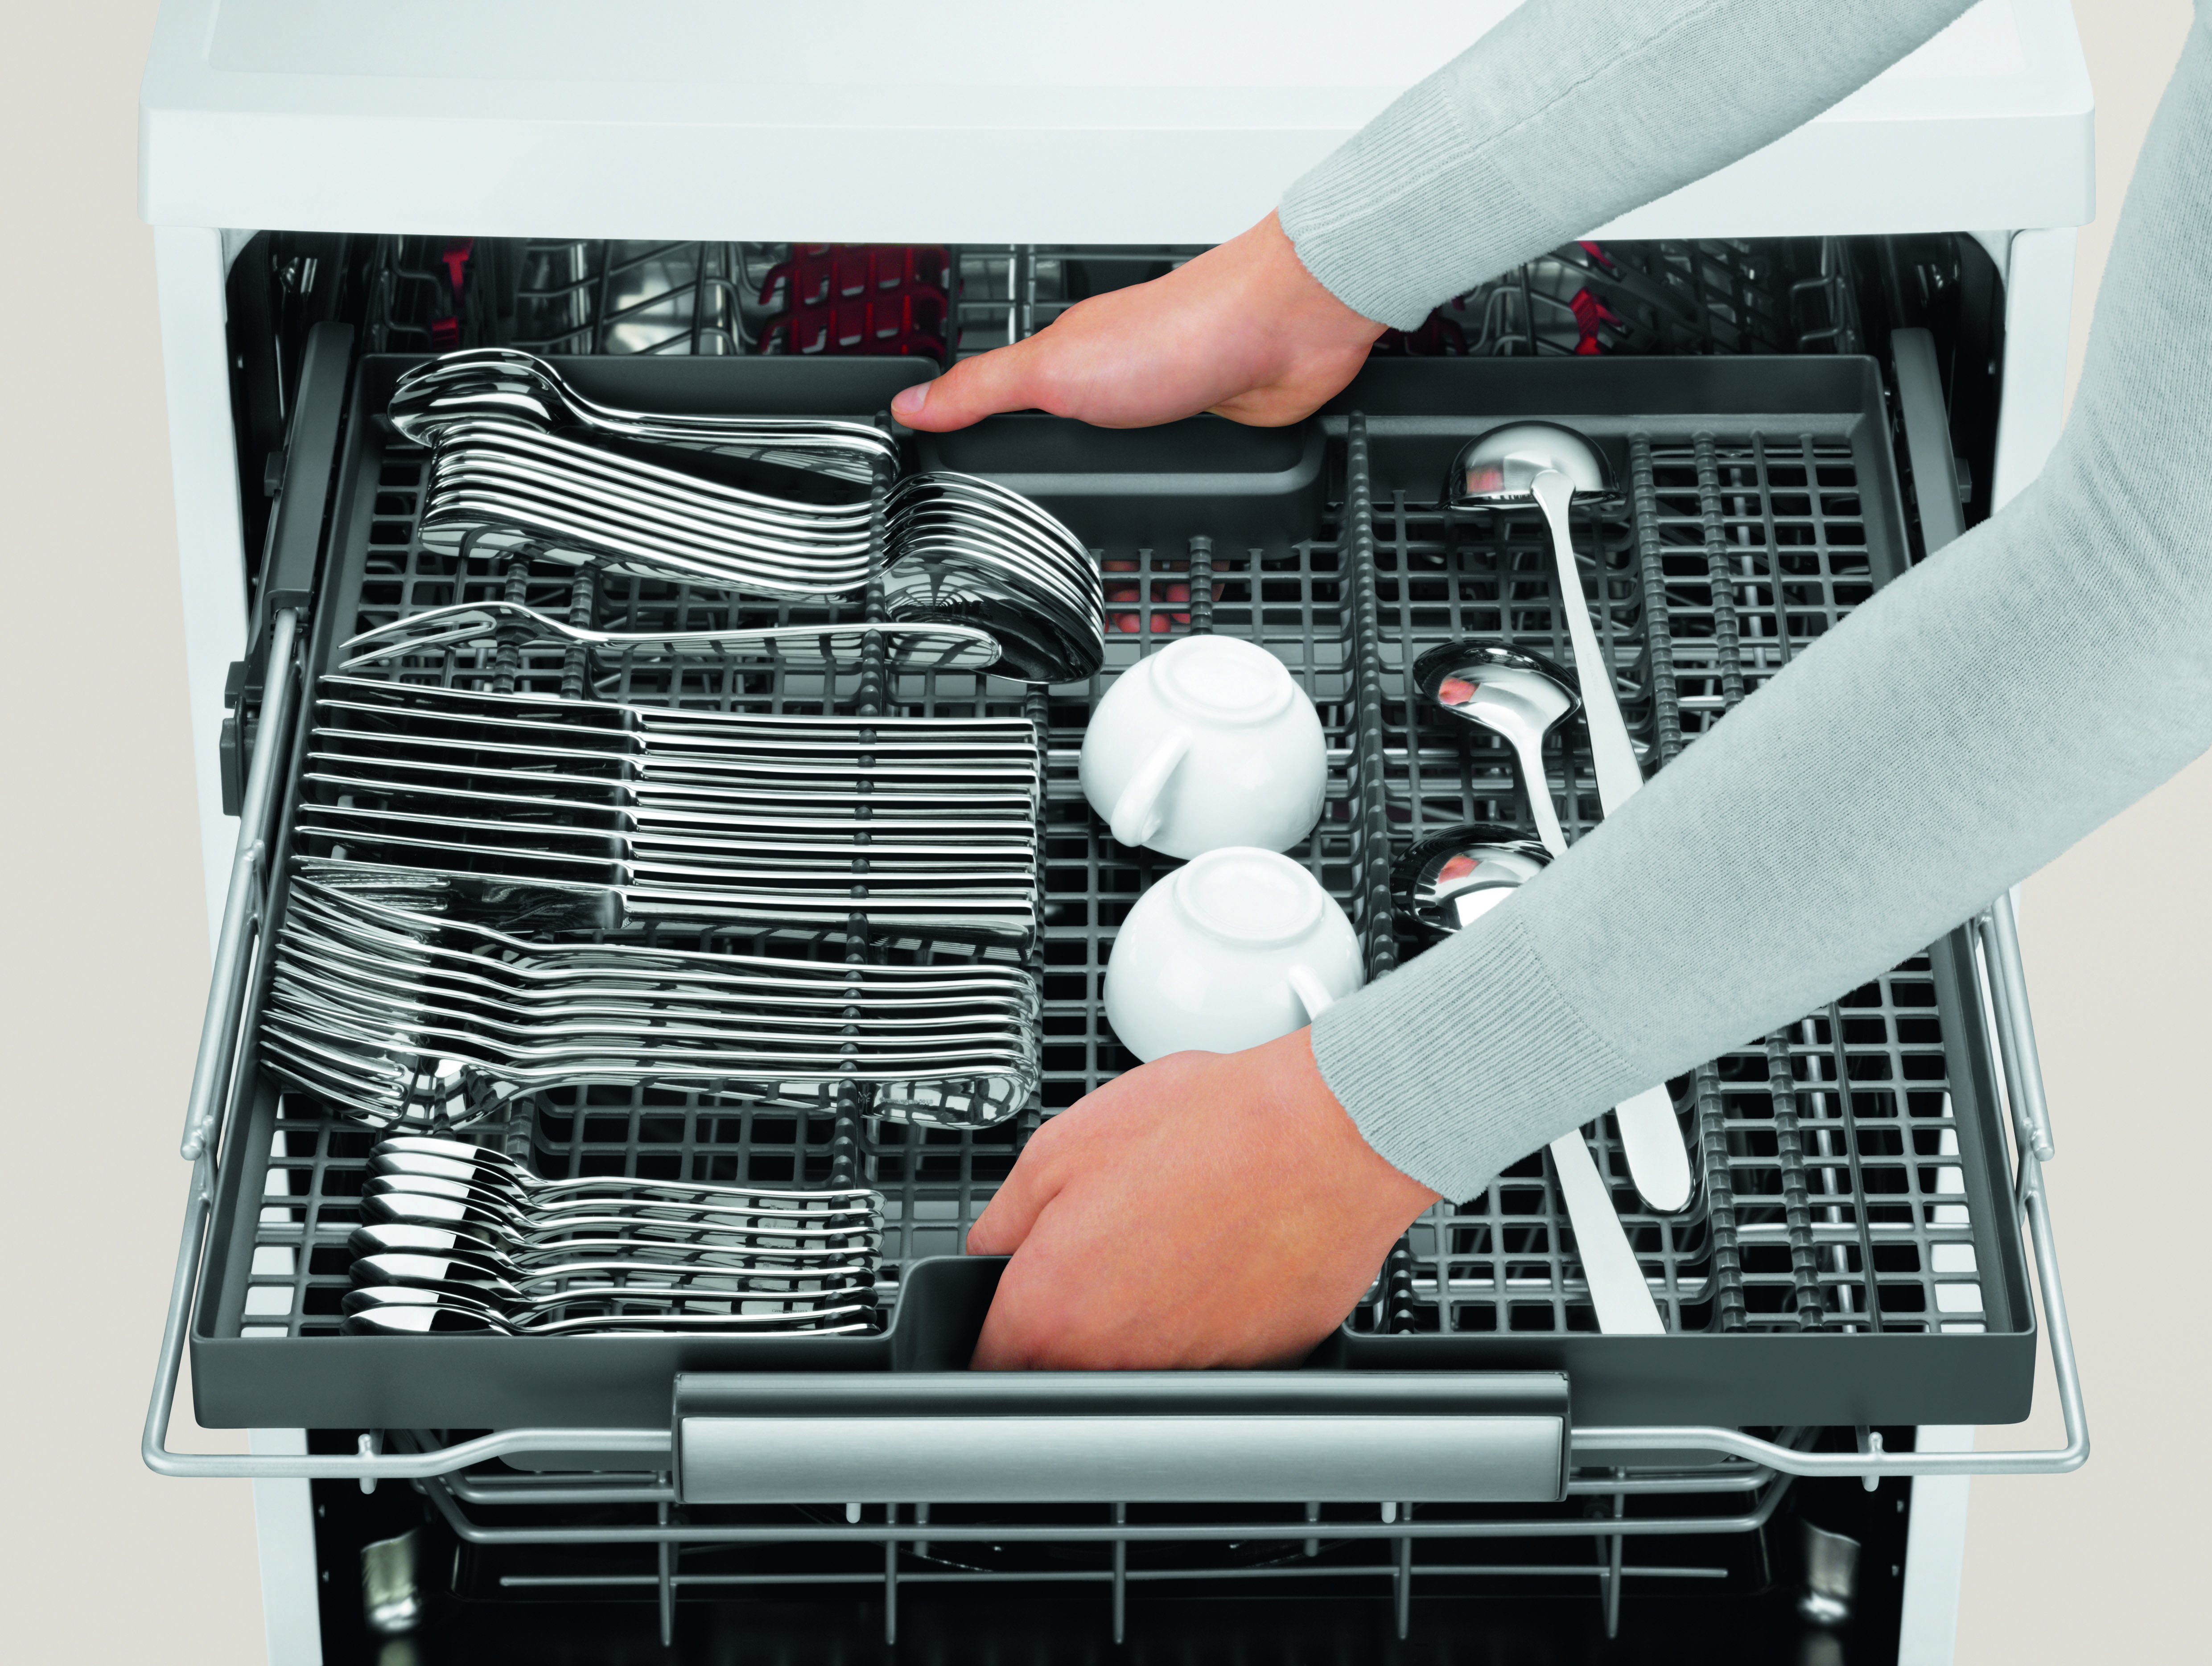 Правила пользования посудомоечной машиной электролюкс